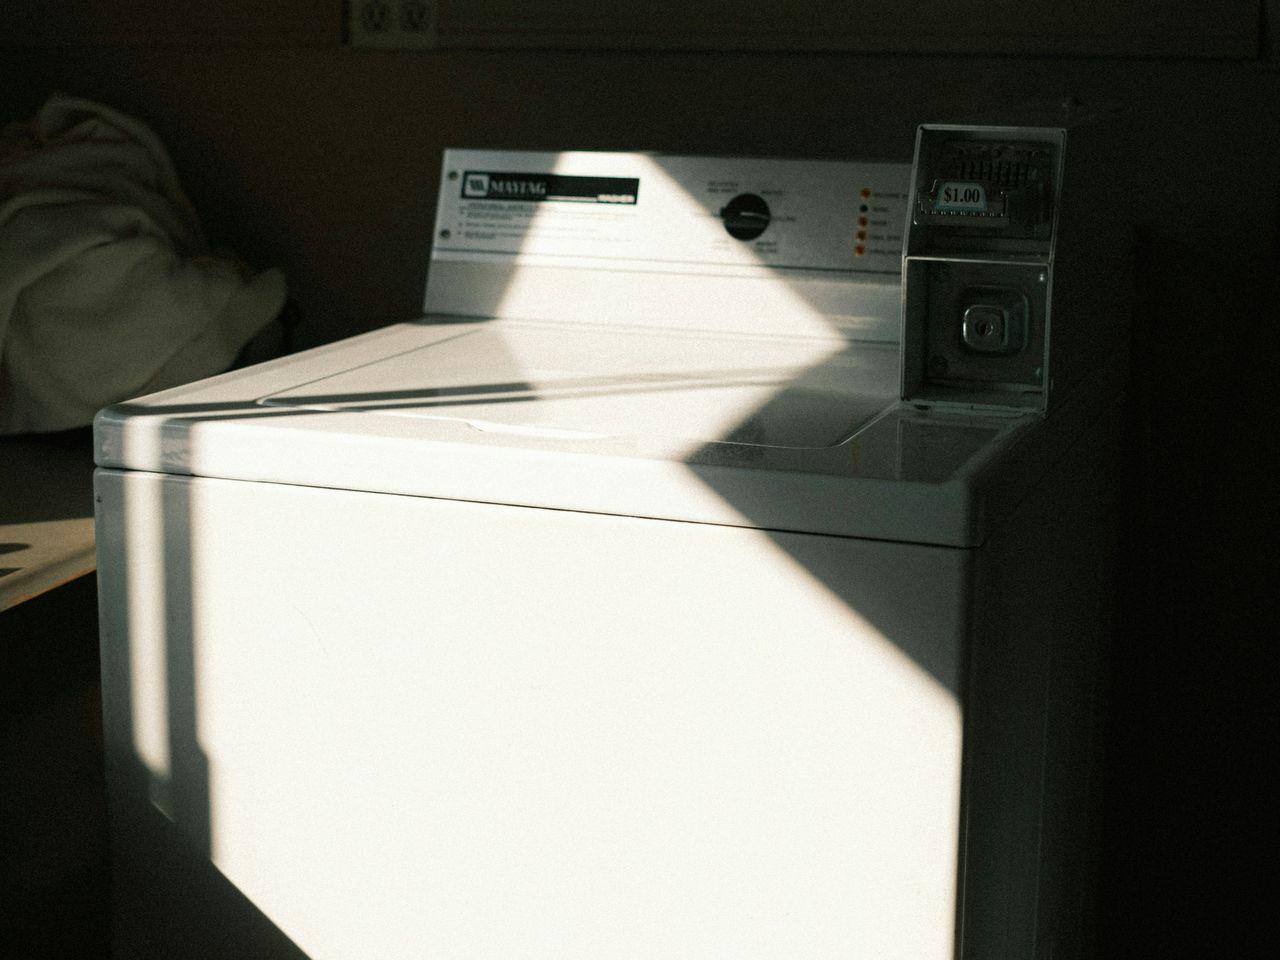 Ein Analogfoto einer Waschmaschine im Sonnenlicht